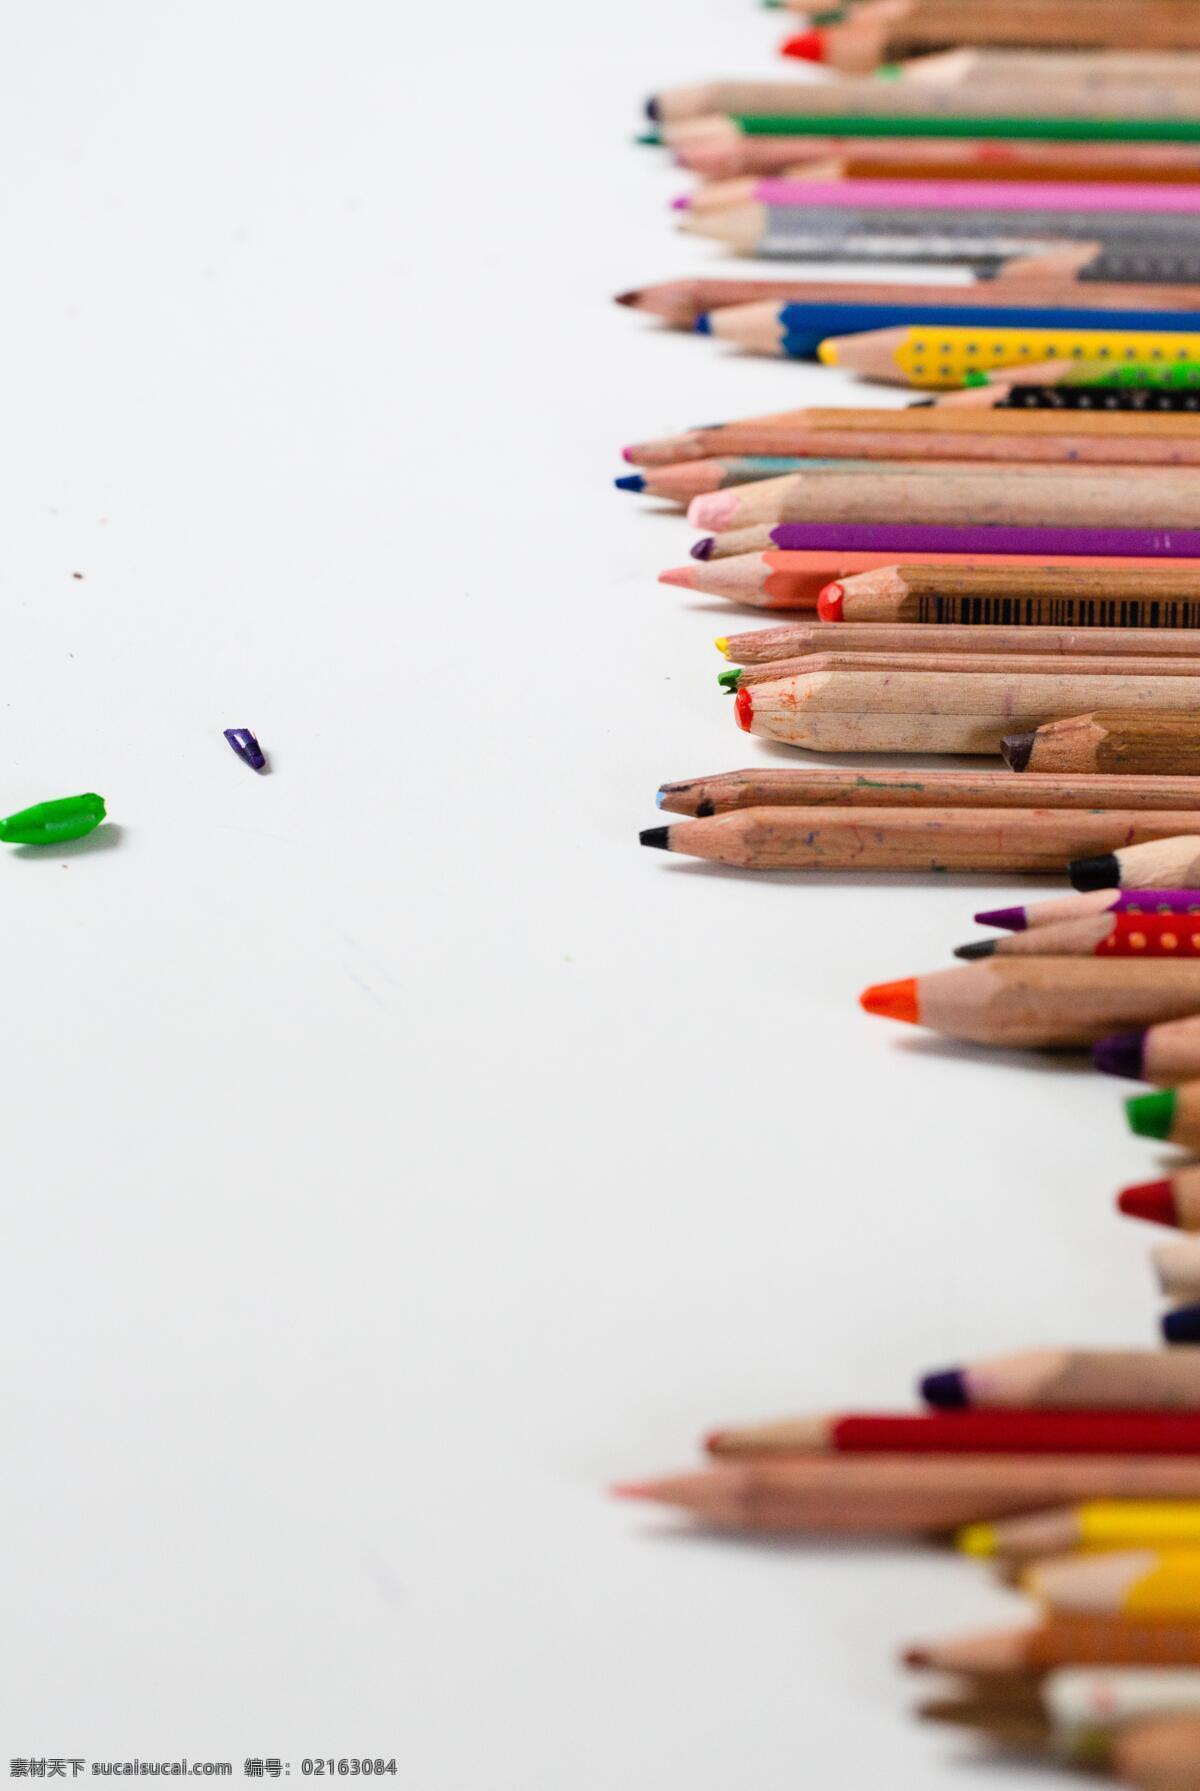 铅笔教育背景 铅笔 背景 绿色 黄色 红色 蓝色 紫色 生活百科 体育用品